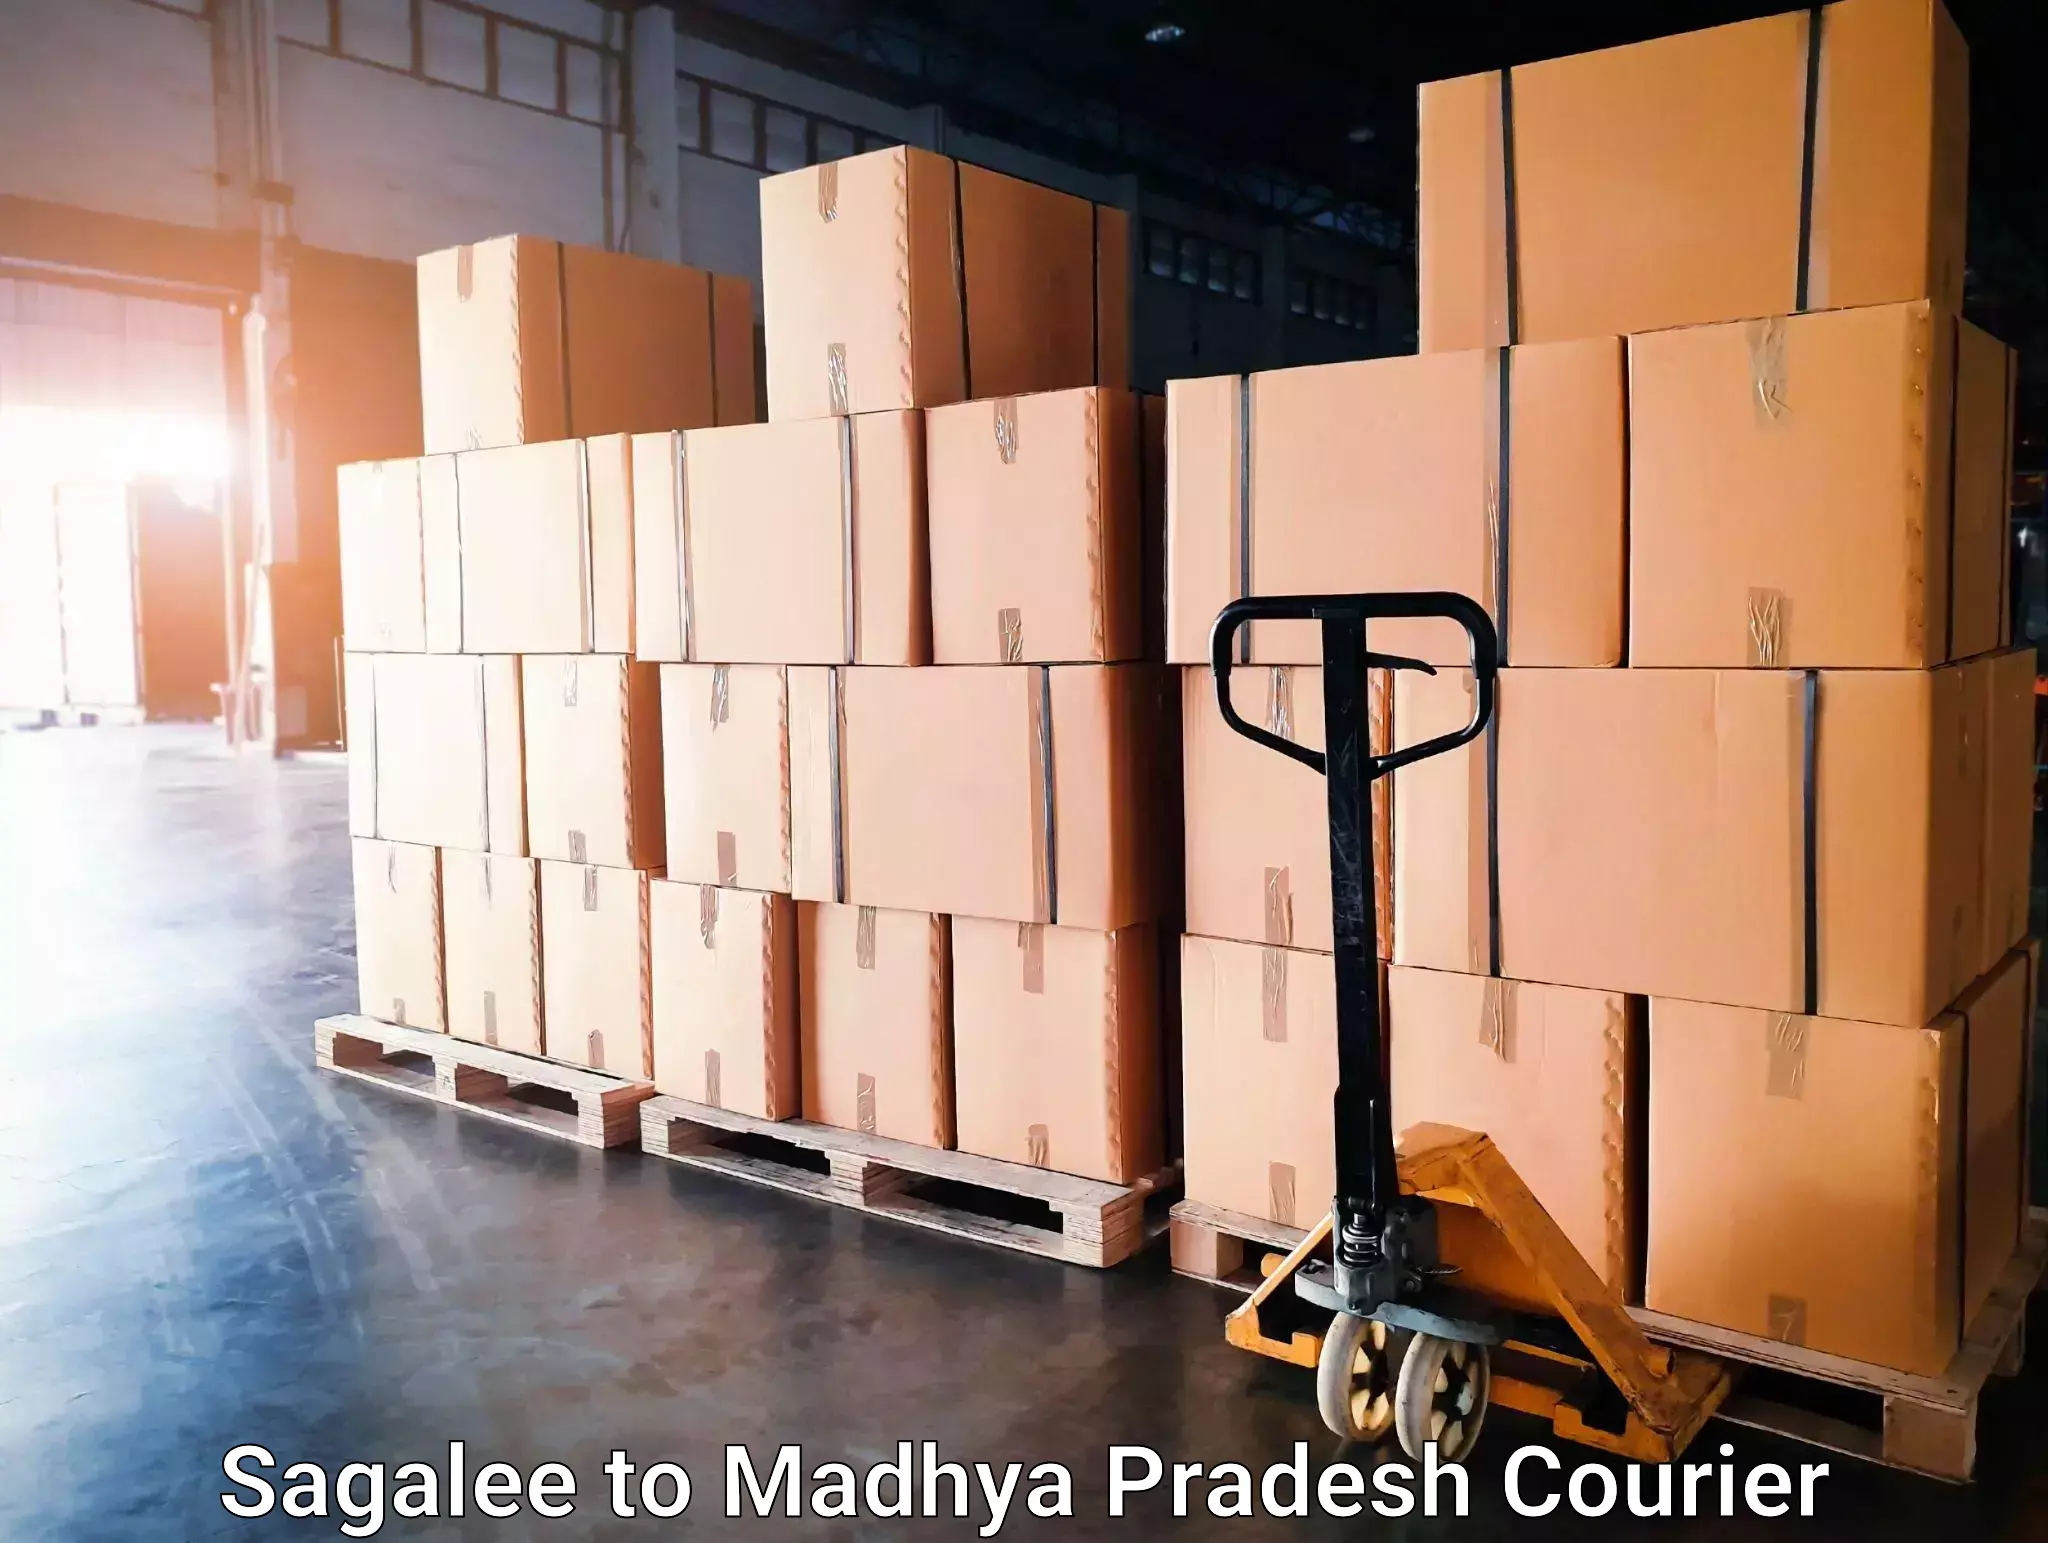 Multi-modal transport Sagalee to Jatara